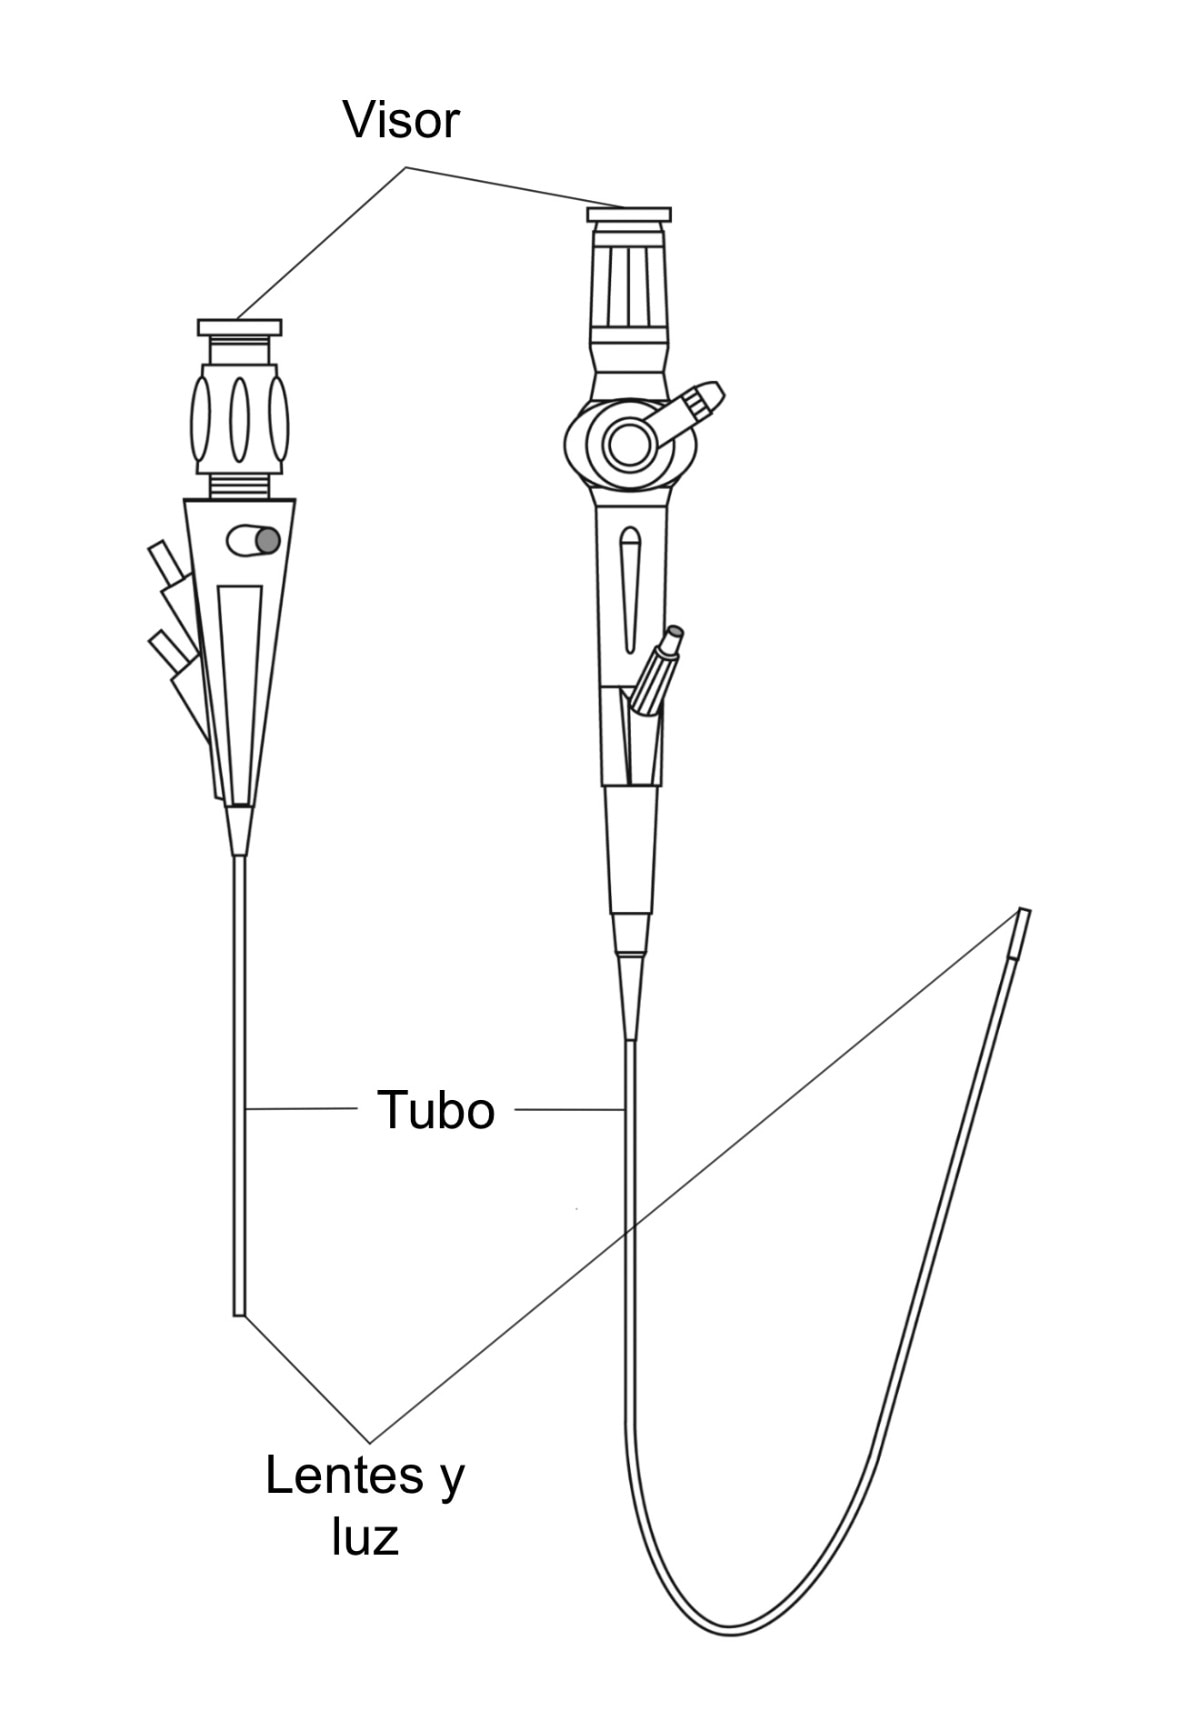 Dibujo de un cistoscopio rígido y un ureteroscopio flexible con visores, tubos, y lentes y luces etiquetados.